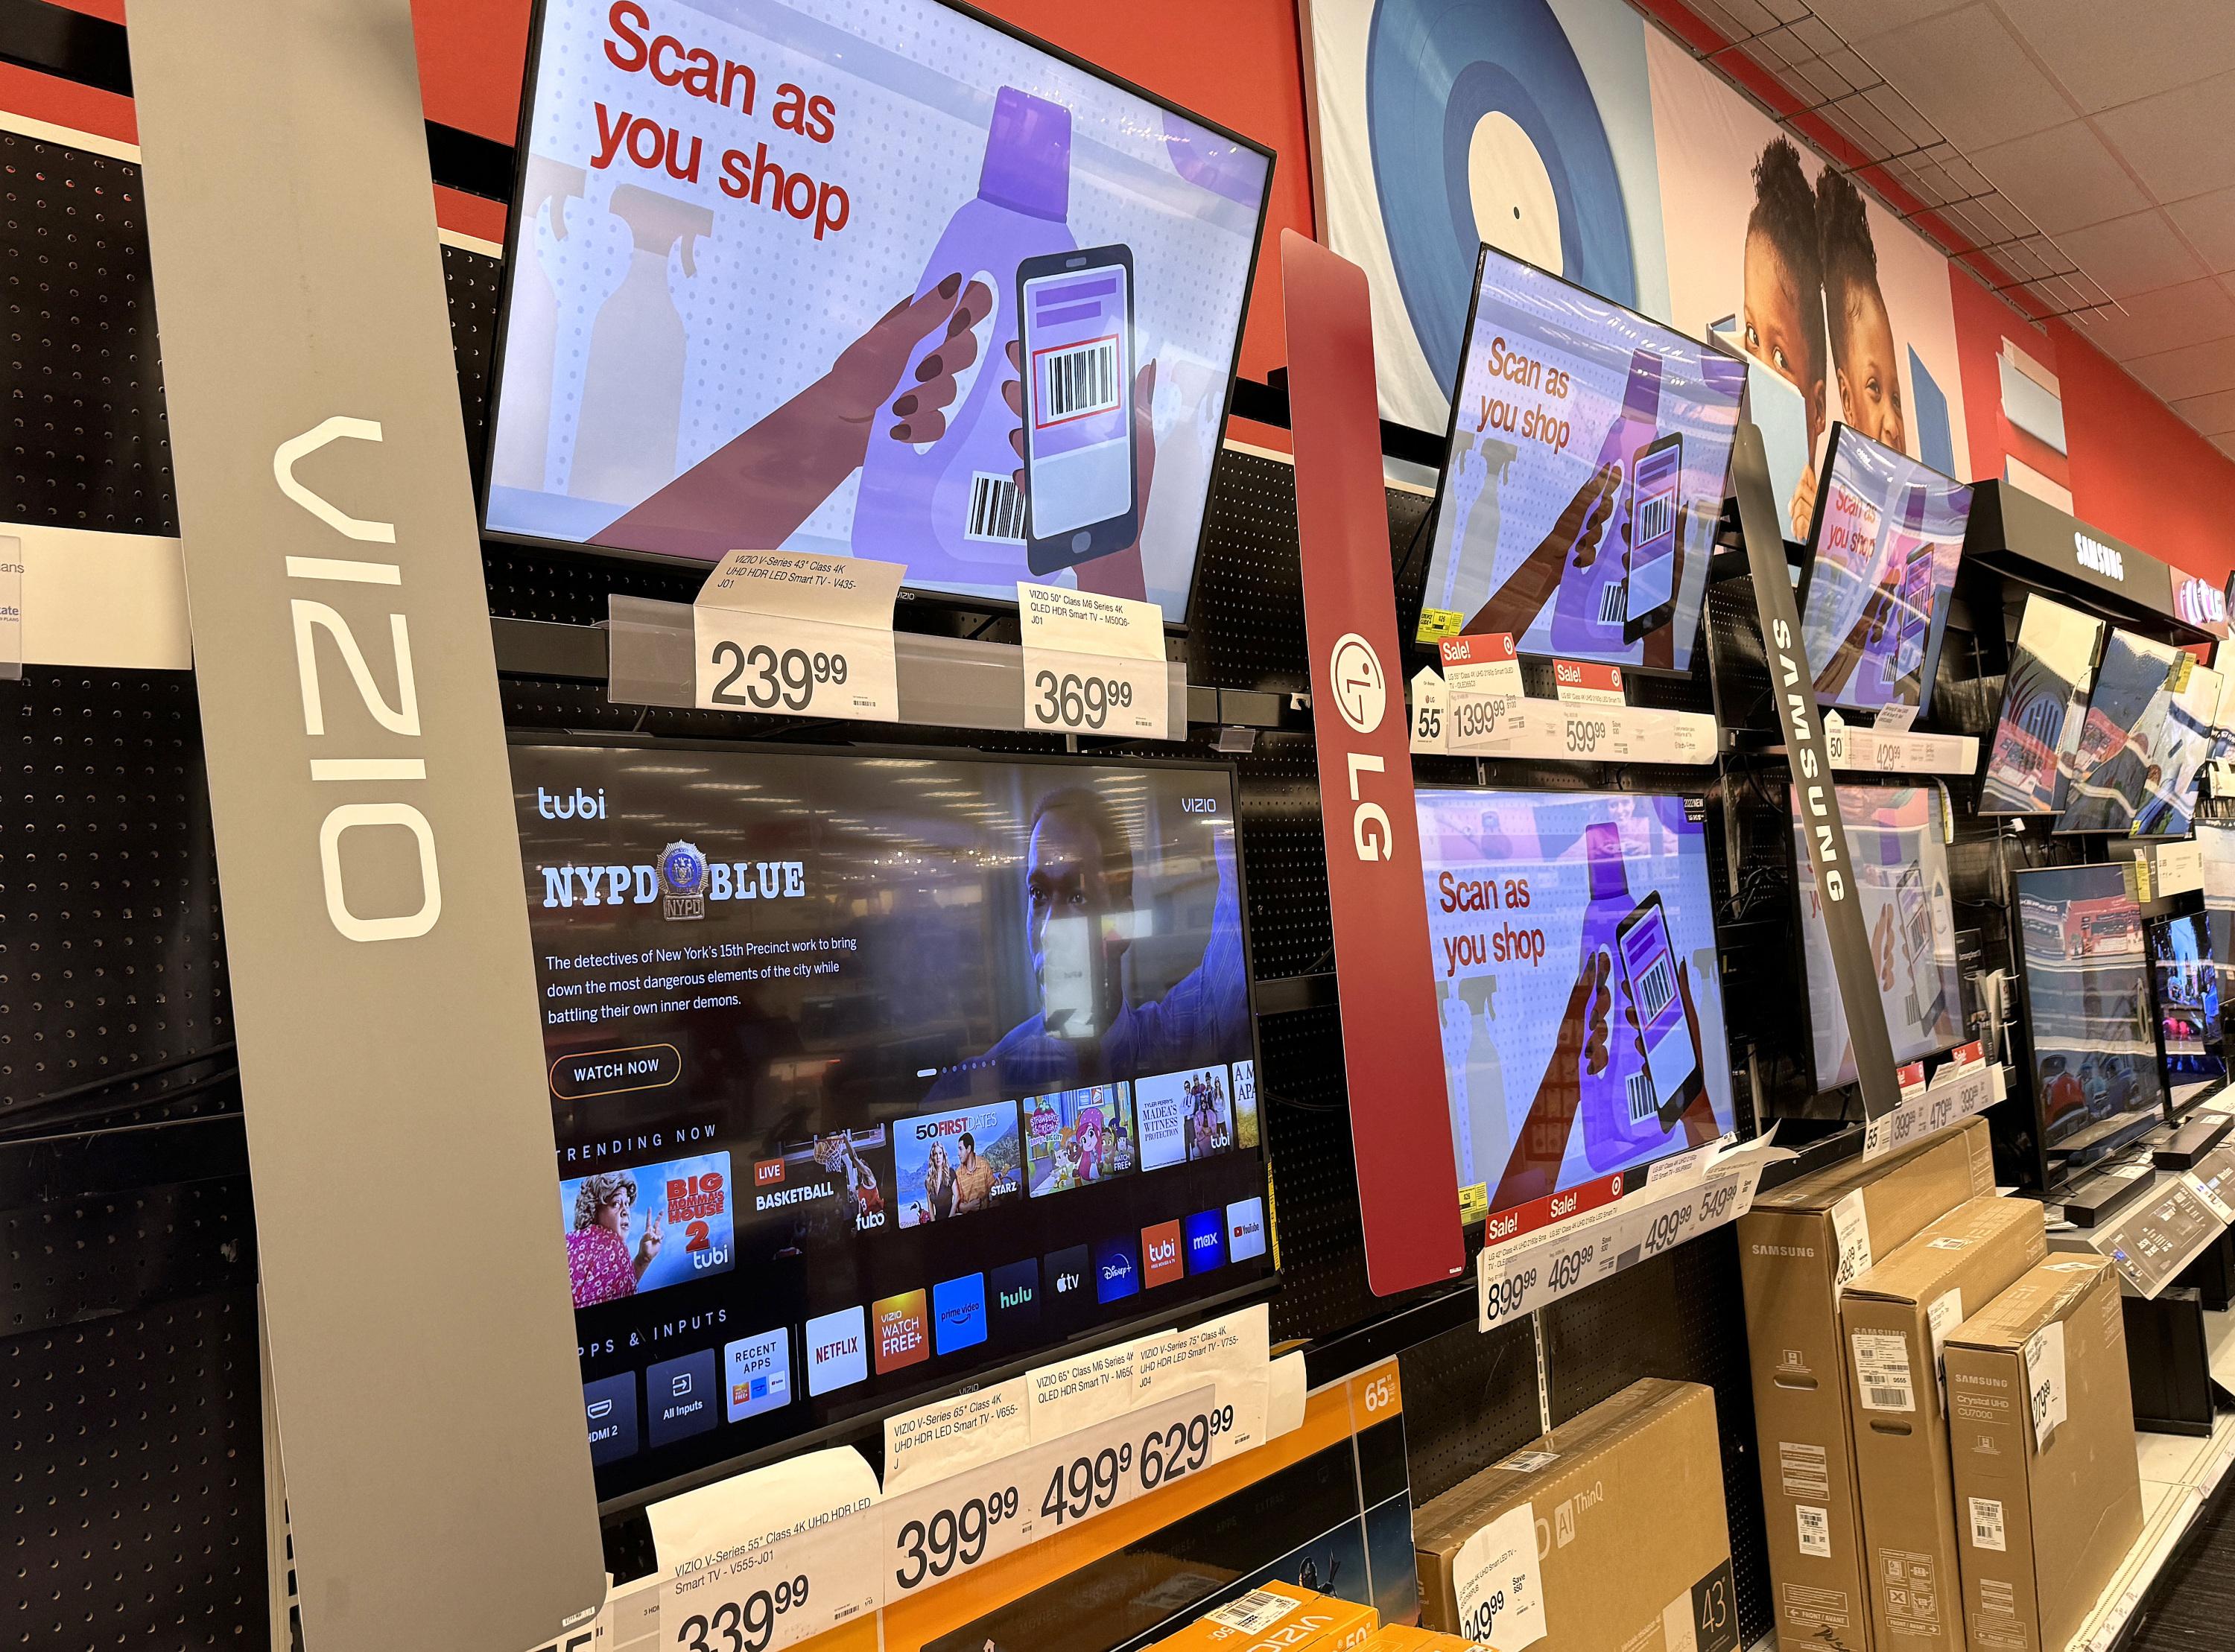 En acquérant Vizio, Walmart pourra ainsi vendre des publicités par l'intermédiaire de services de diffusion en continu sur la télévision.